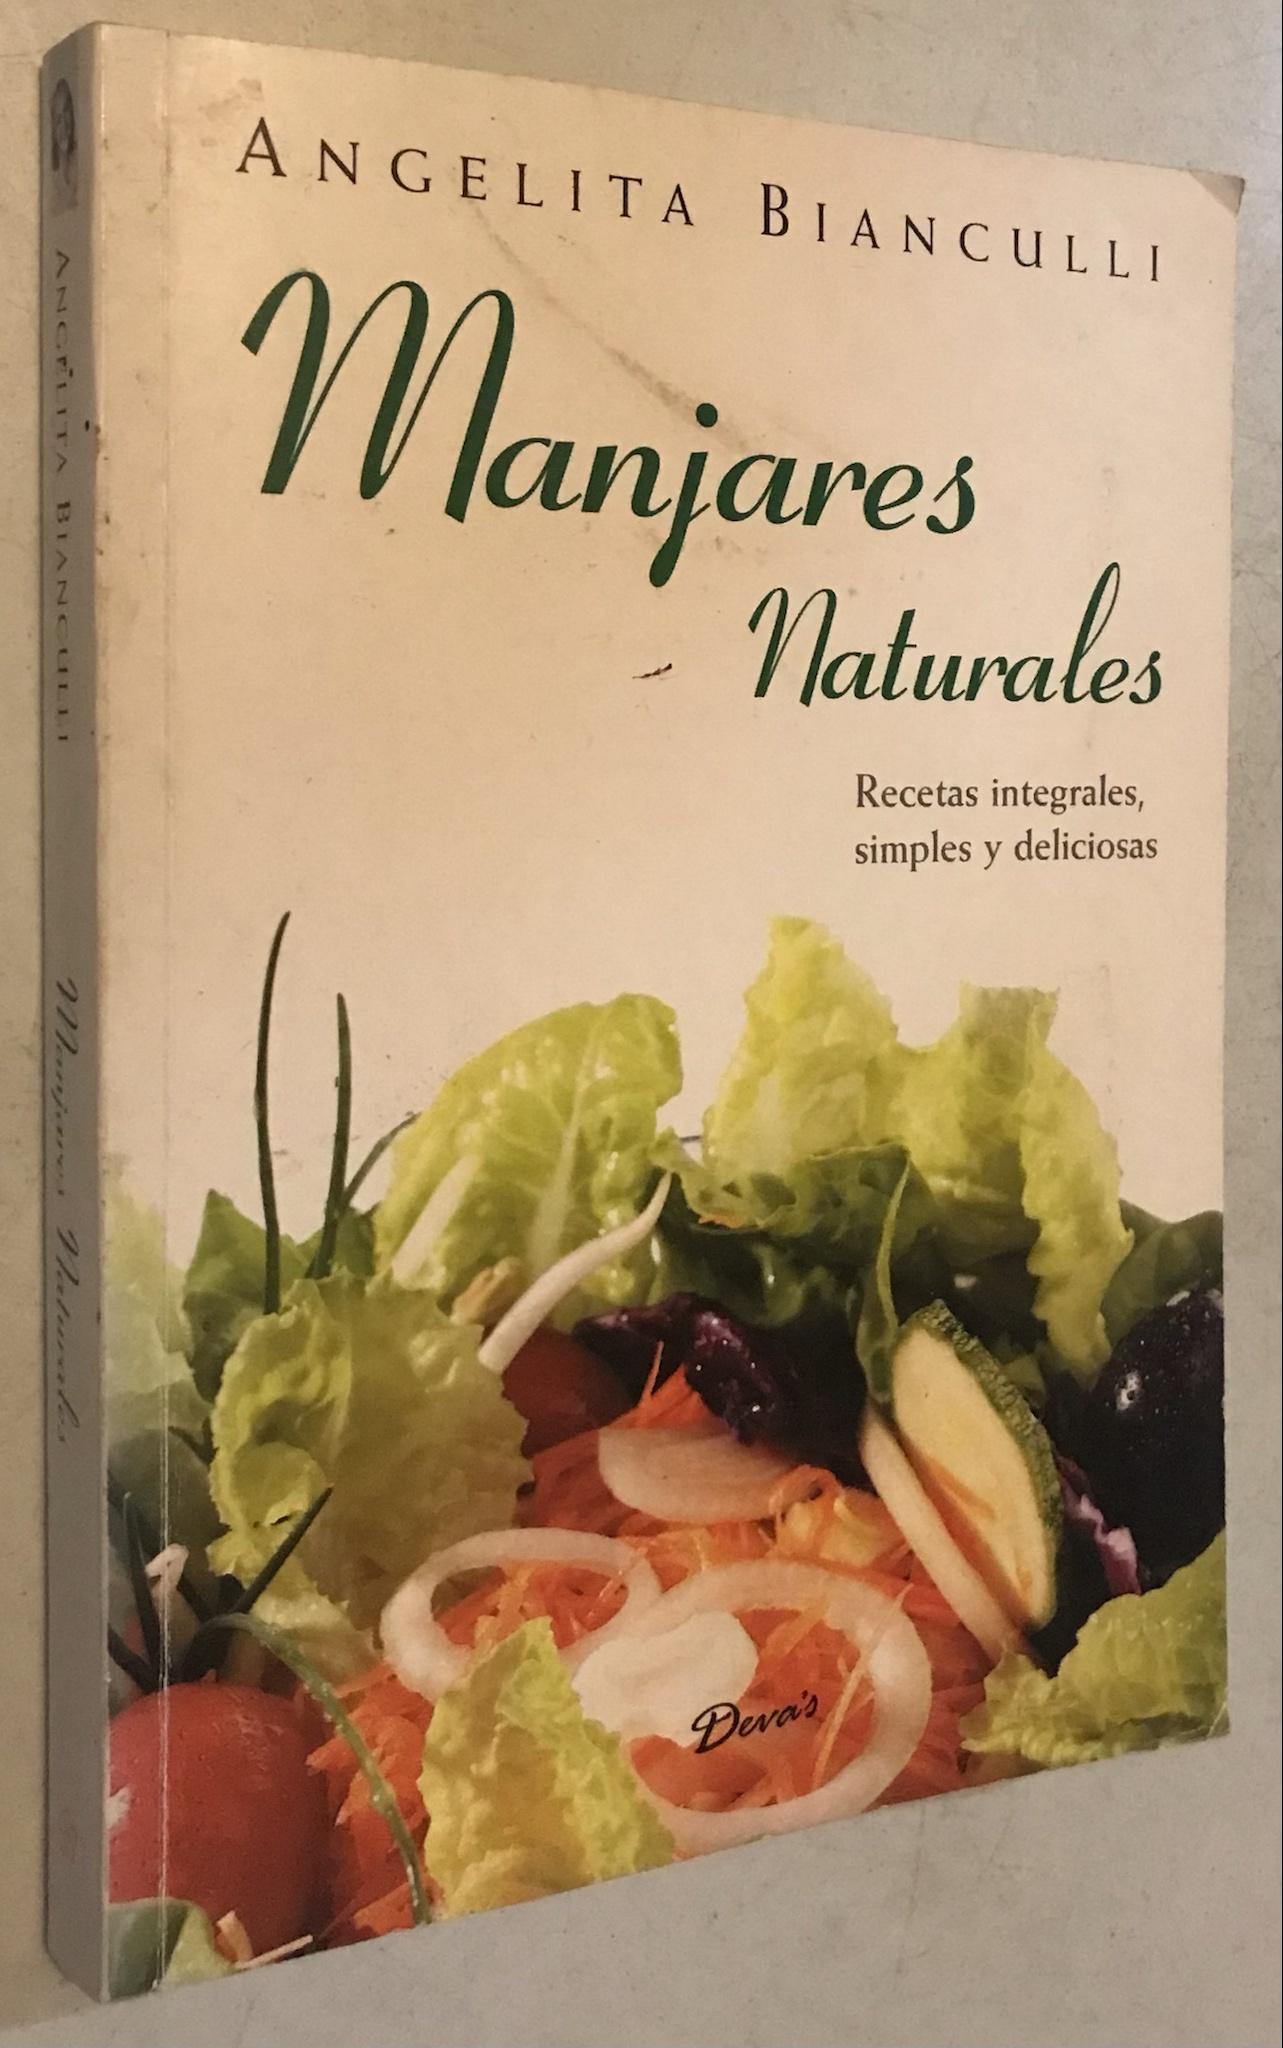 Manjares naturales / Natural Delicacies: Recetas integrales, simples y deliciosas / Integral Recipes, simple and delicious (Alimentacion Natural) (Spanish Edition) - by Angela Bianculli (Author)